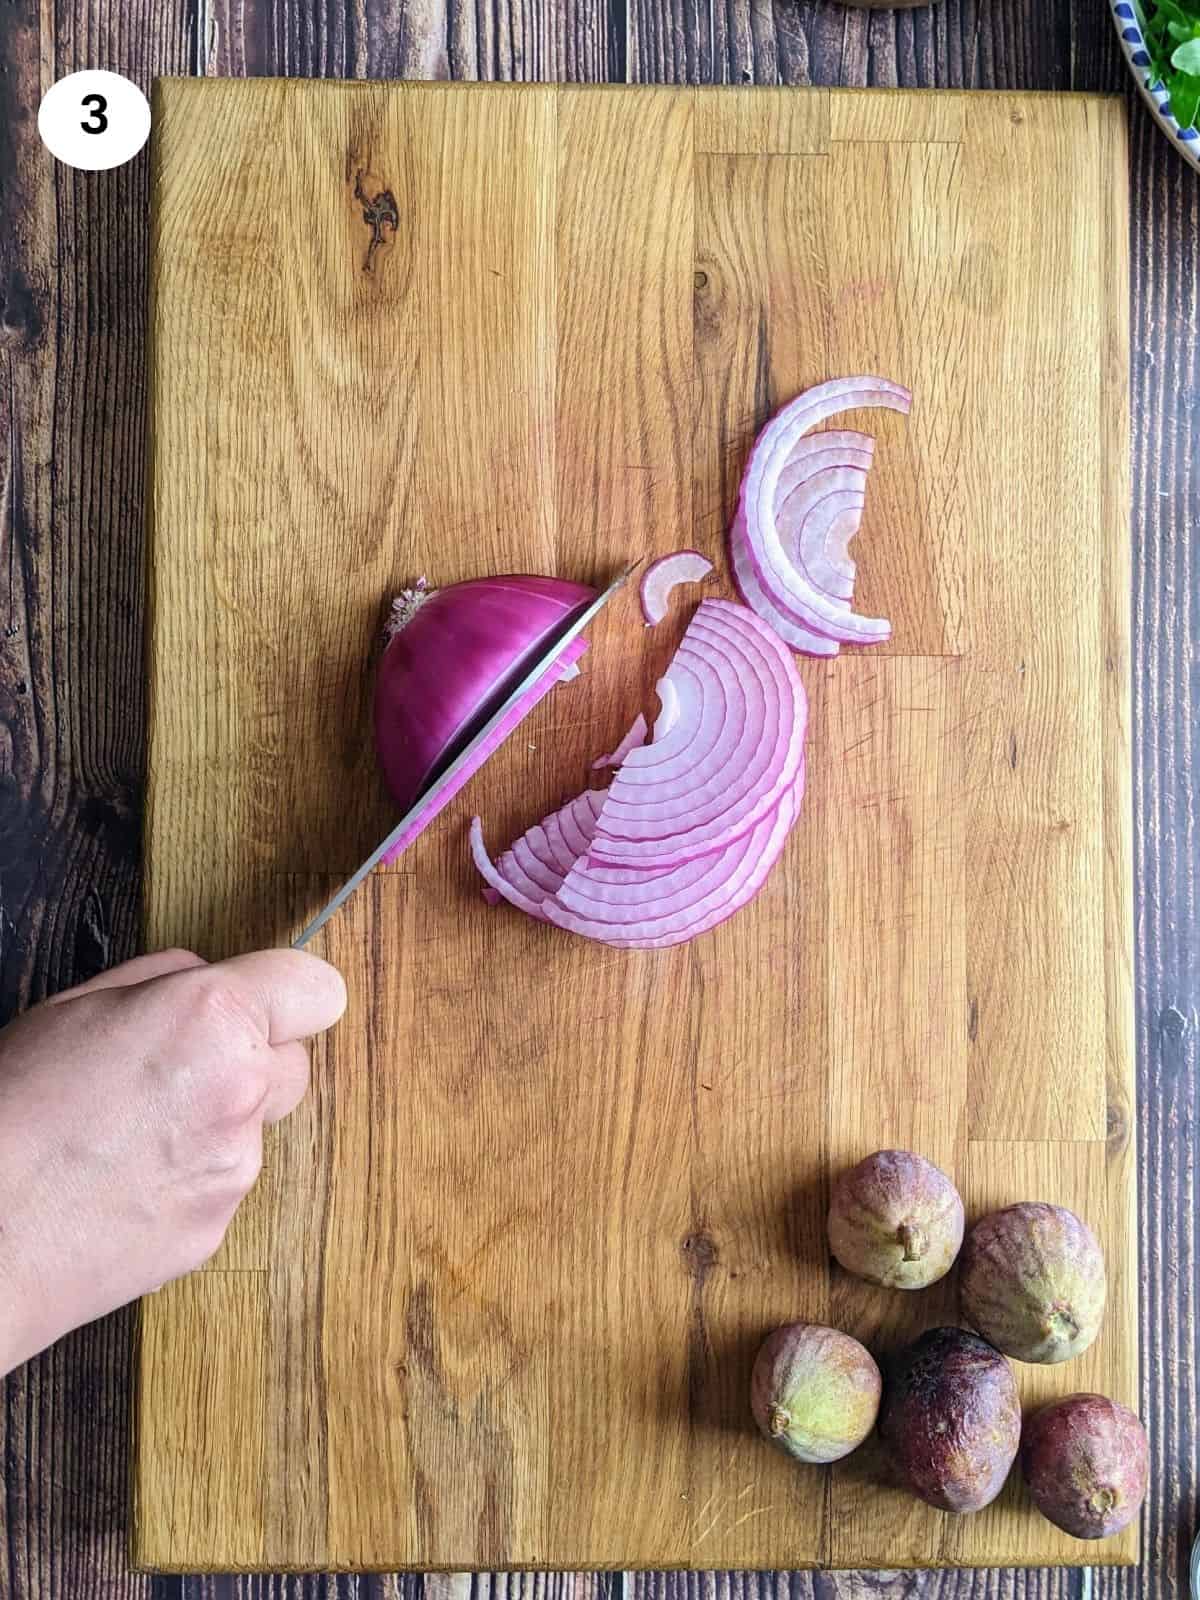 Κόβωντας το κρεμμύδι σε φέτες.